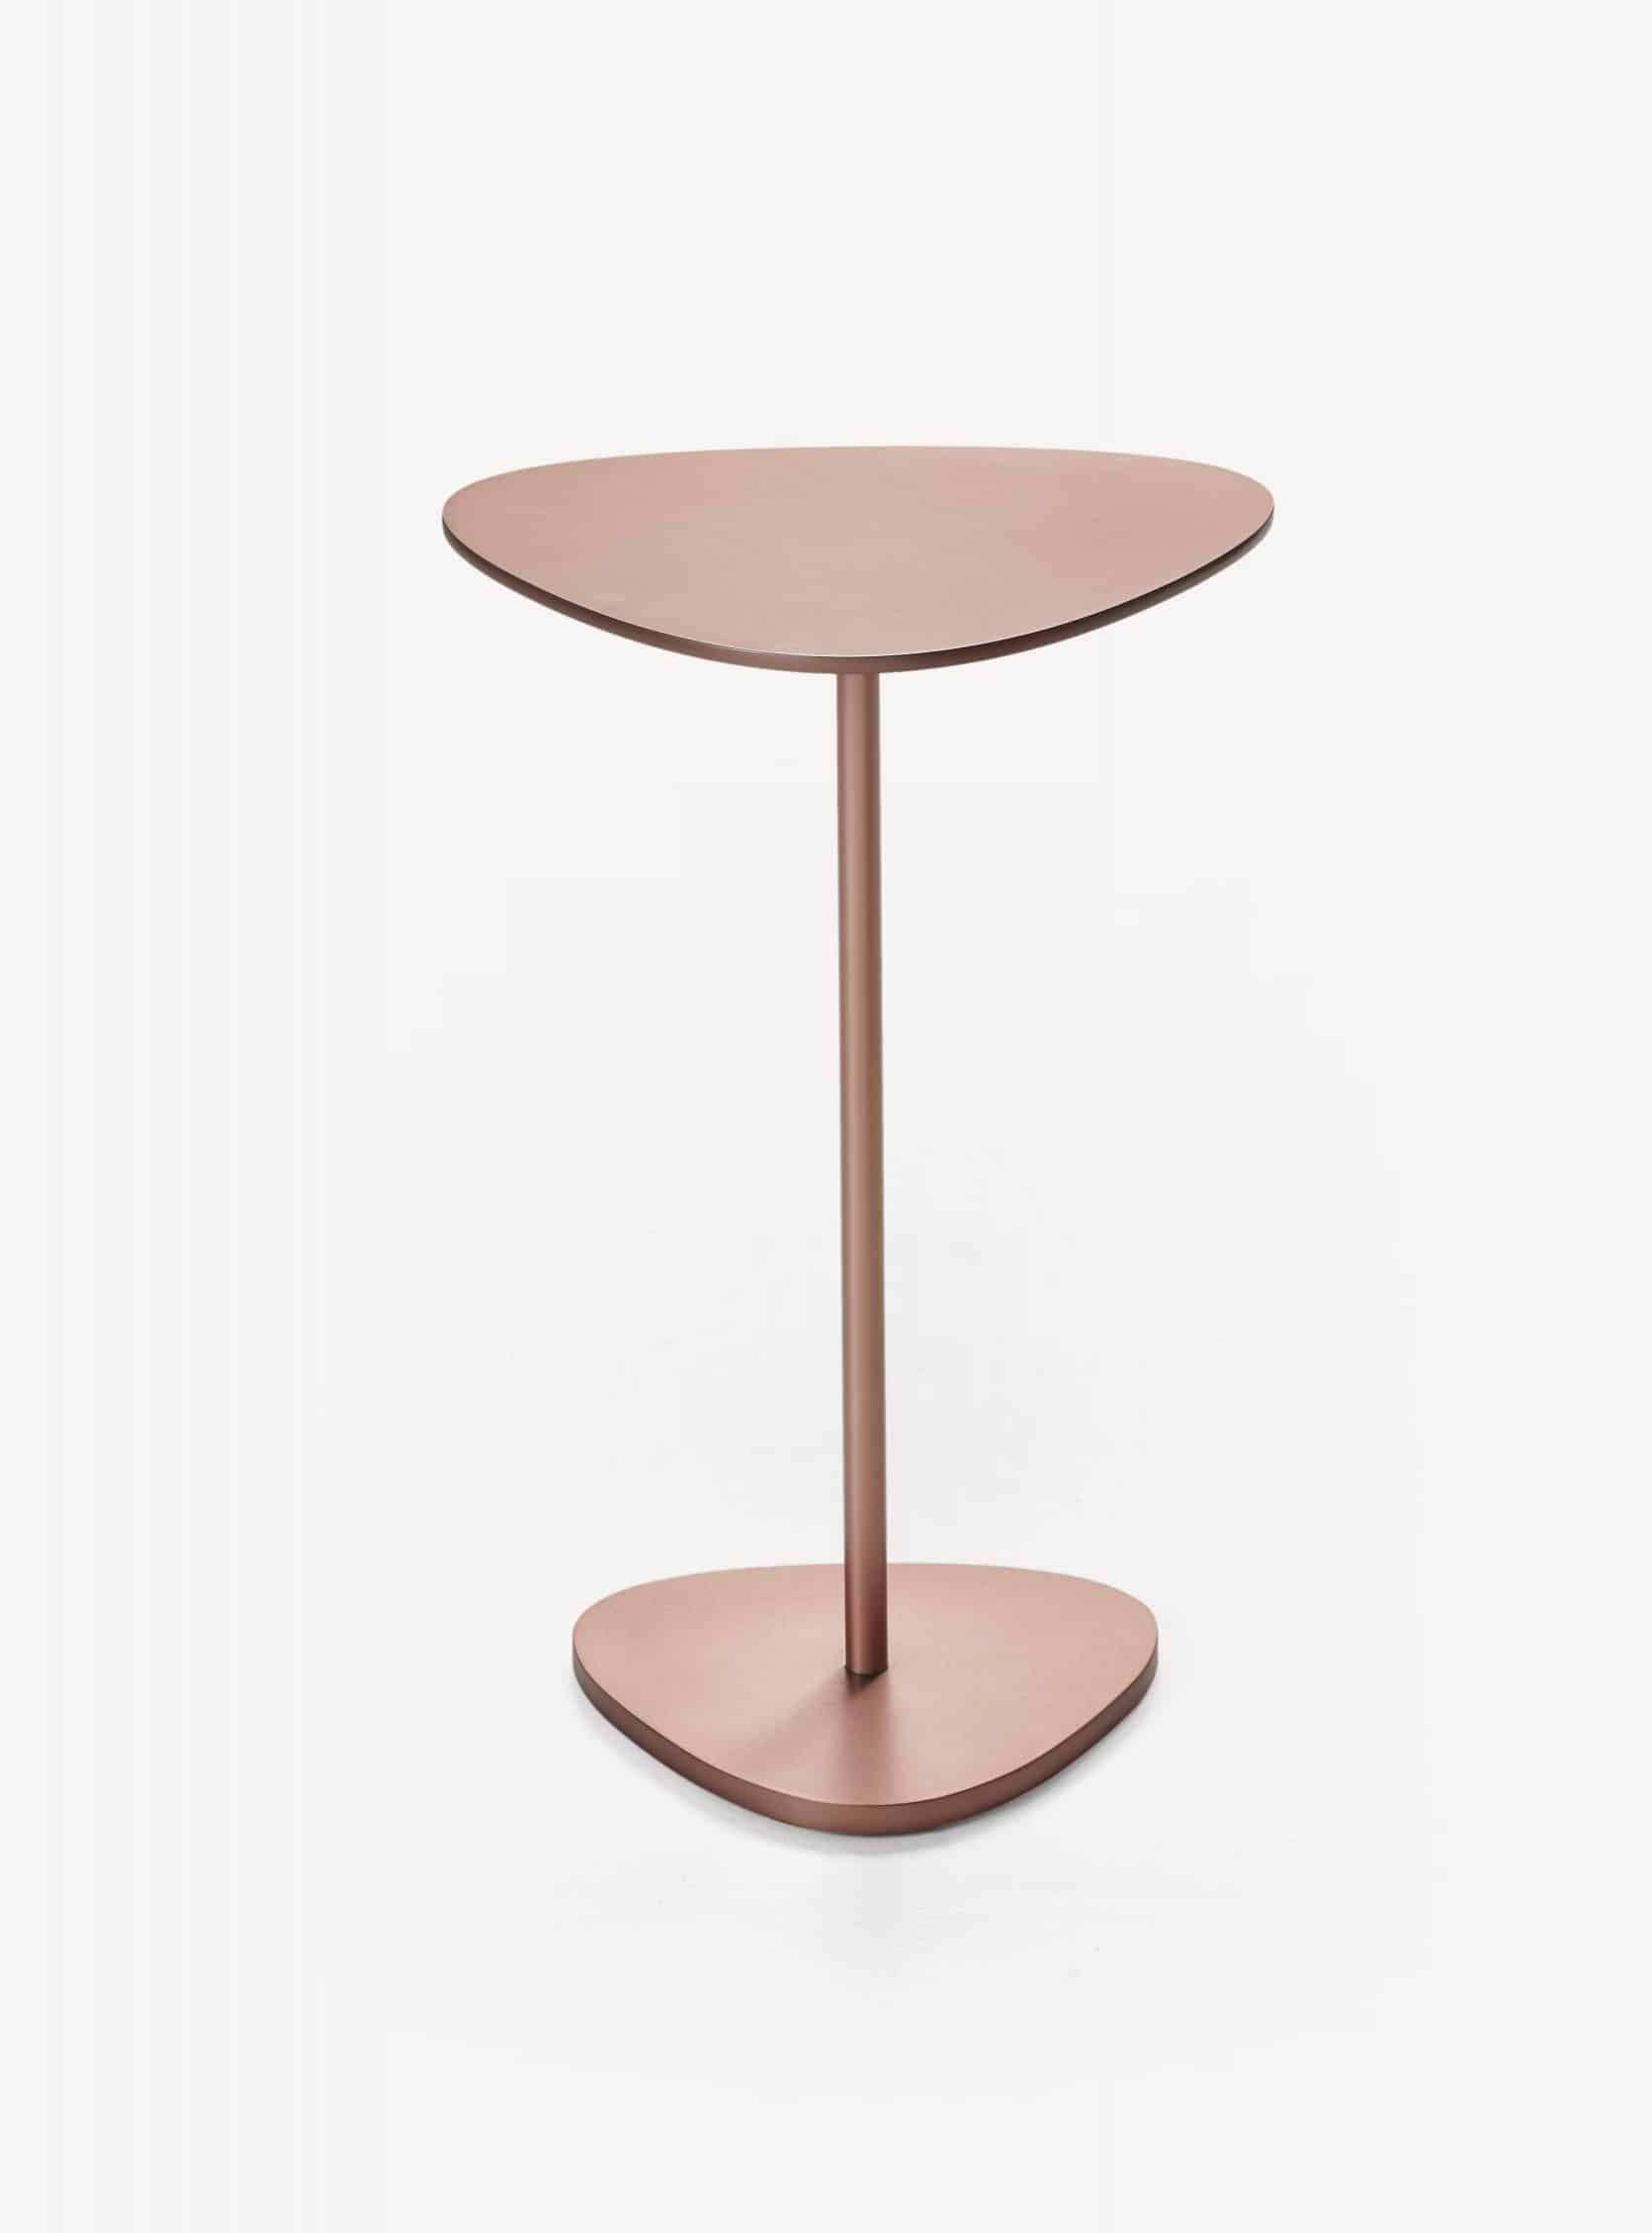 CB-353 Trigon Side Table_Copper_BassamFellows_02